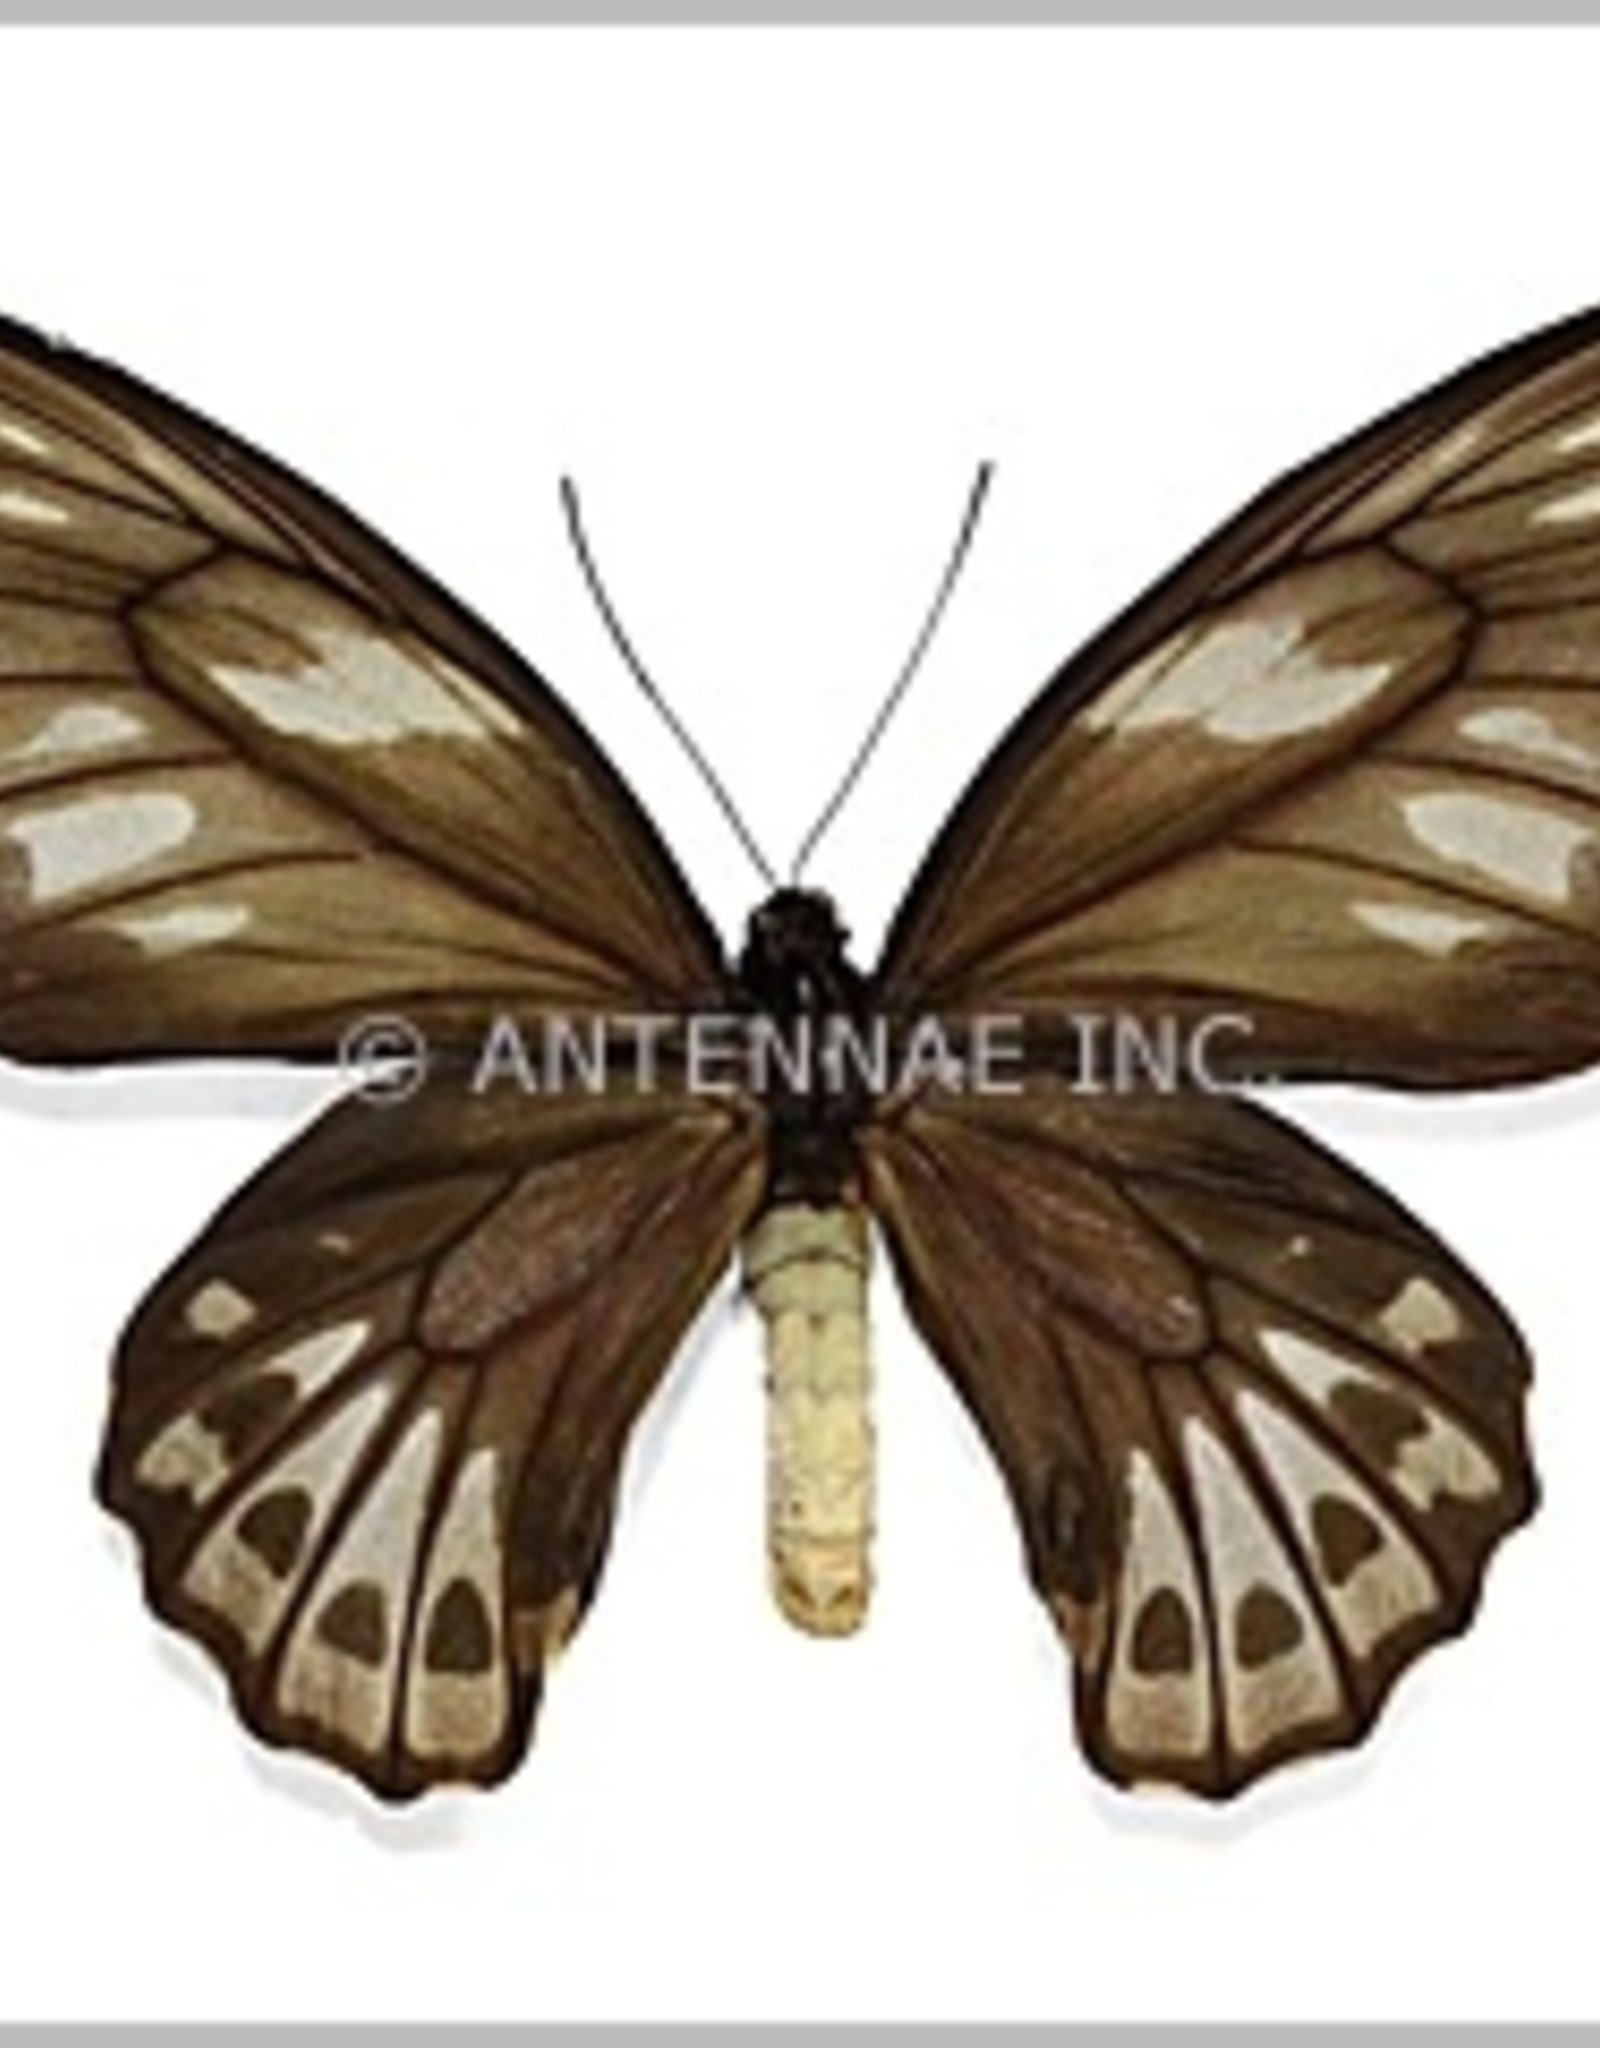 Ornithoptera priamus urvillianus F A1 Indonesia